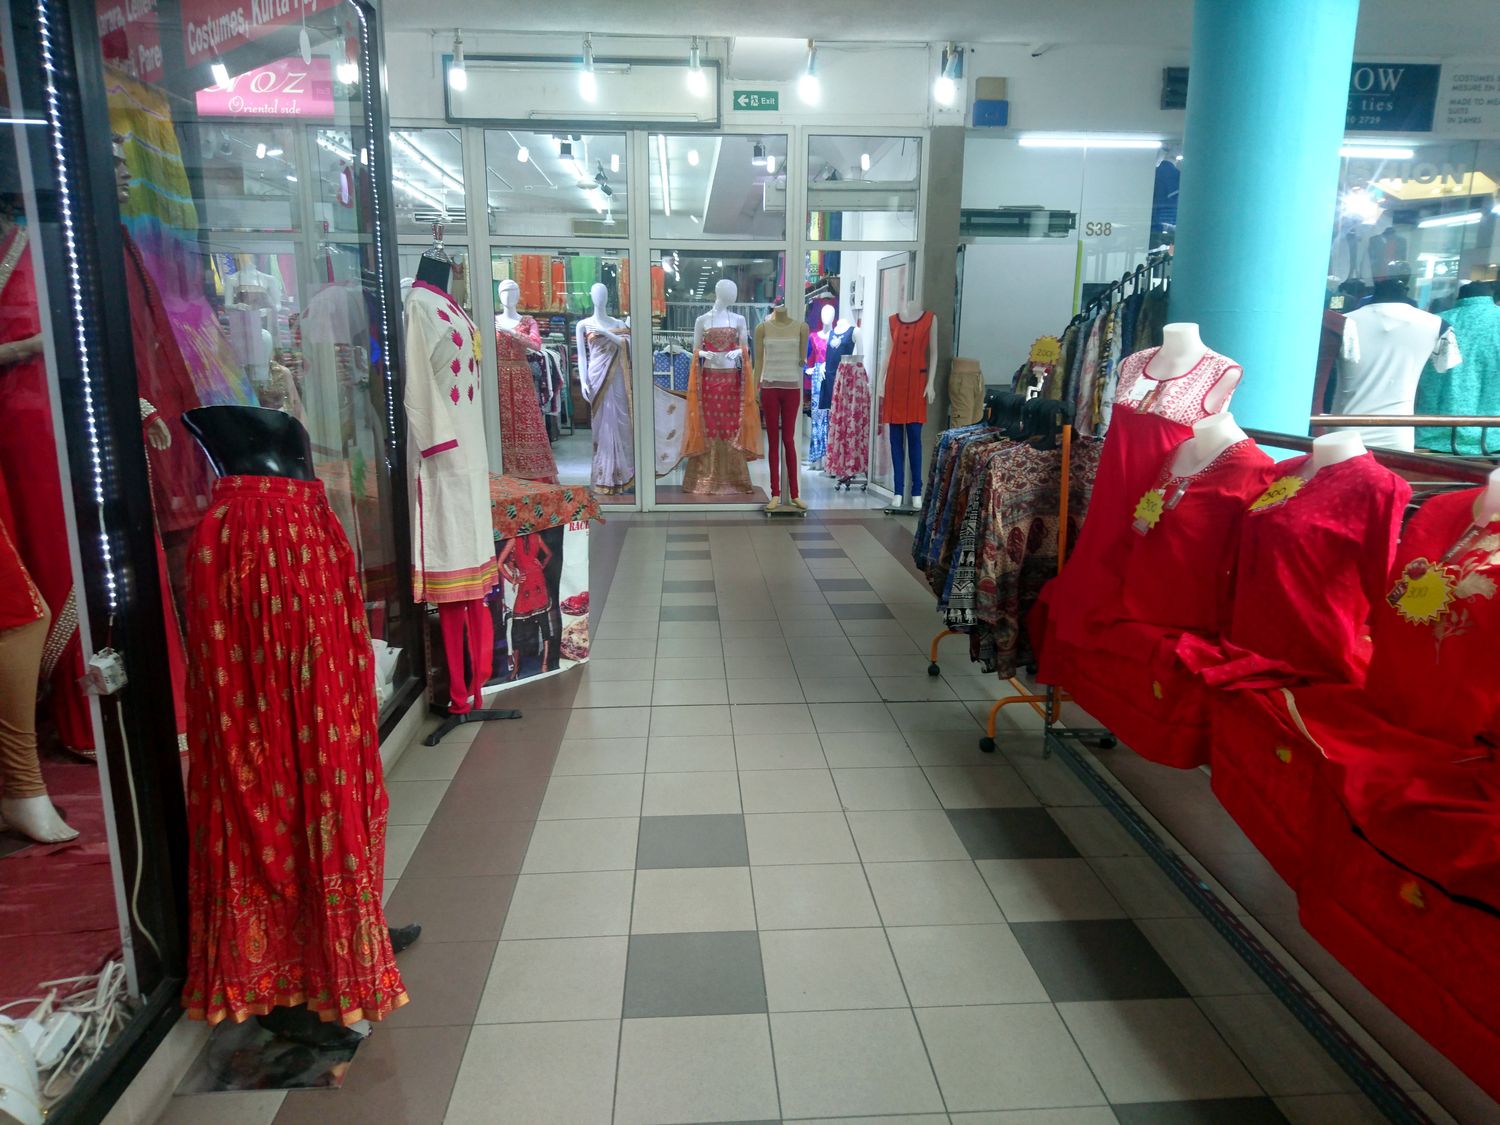 Quatre-Bornes est un foyer de peuplement indien, cela se voit dans le nombre de boutique où l’on vend des vêtements traditionnels indiens comme des saris.